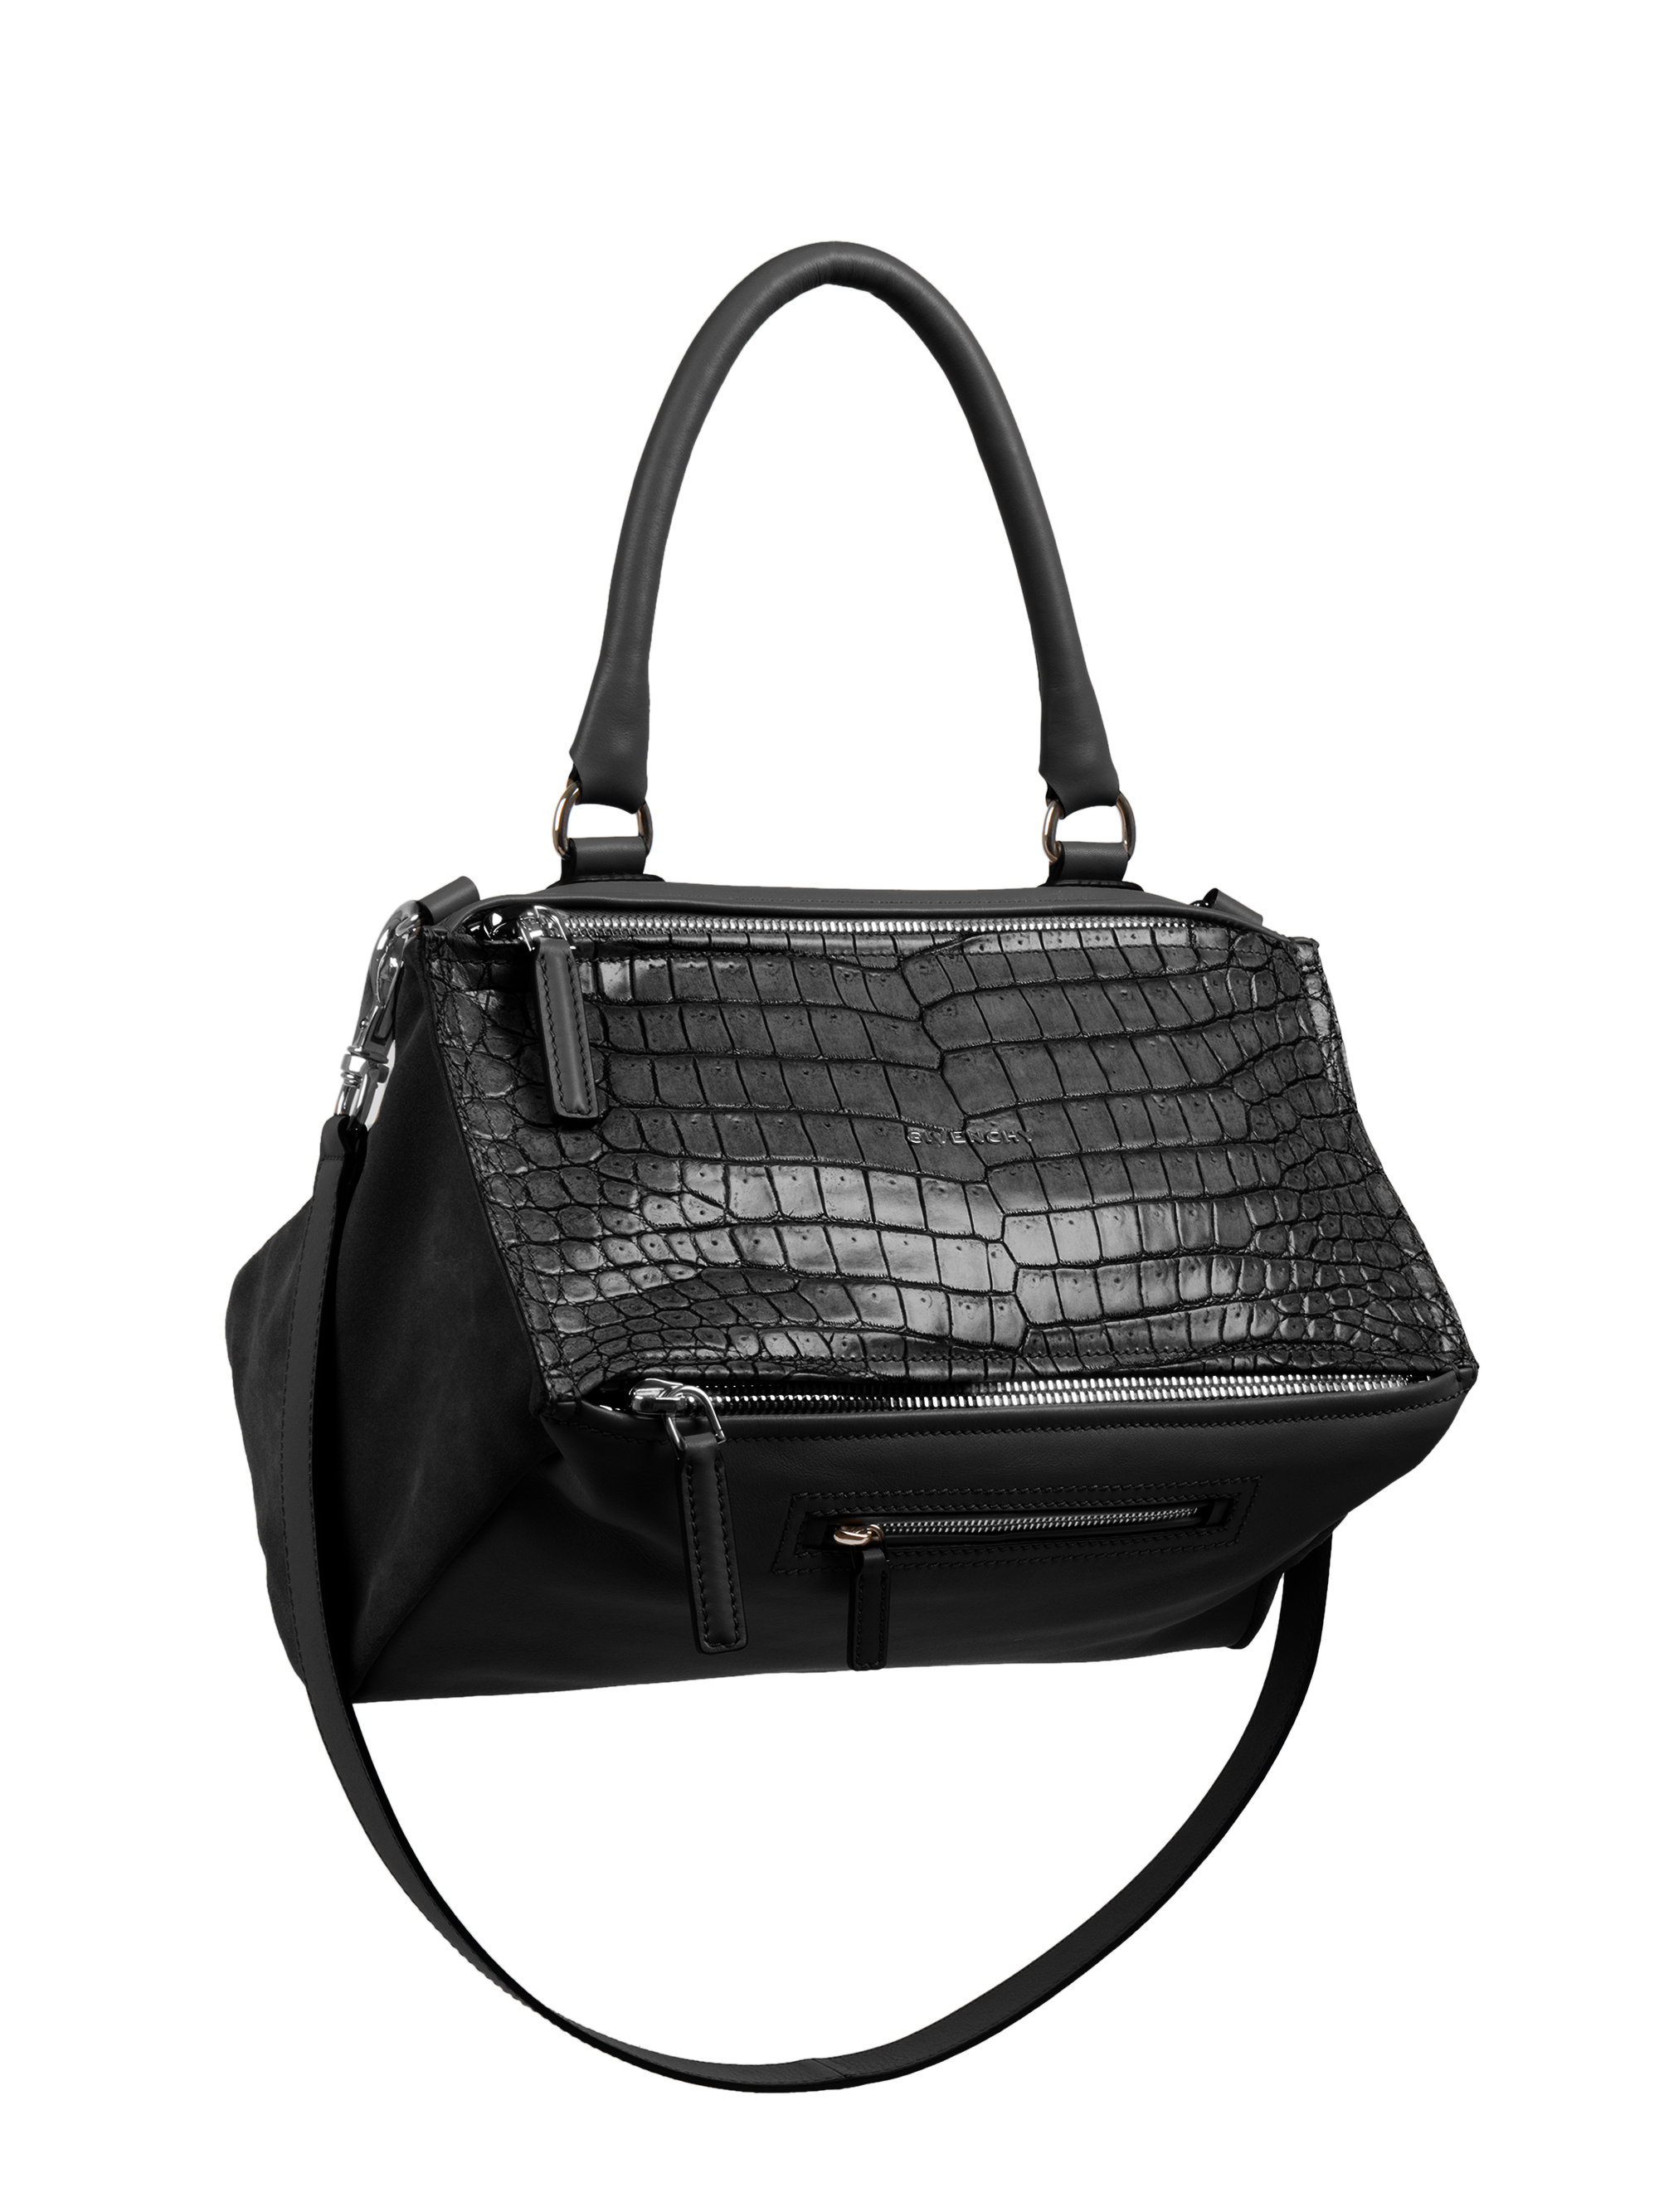 Lyst - Givenchy Pandora Crocodile-Embossed Shoulder Bag in Black